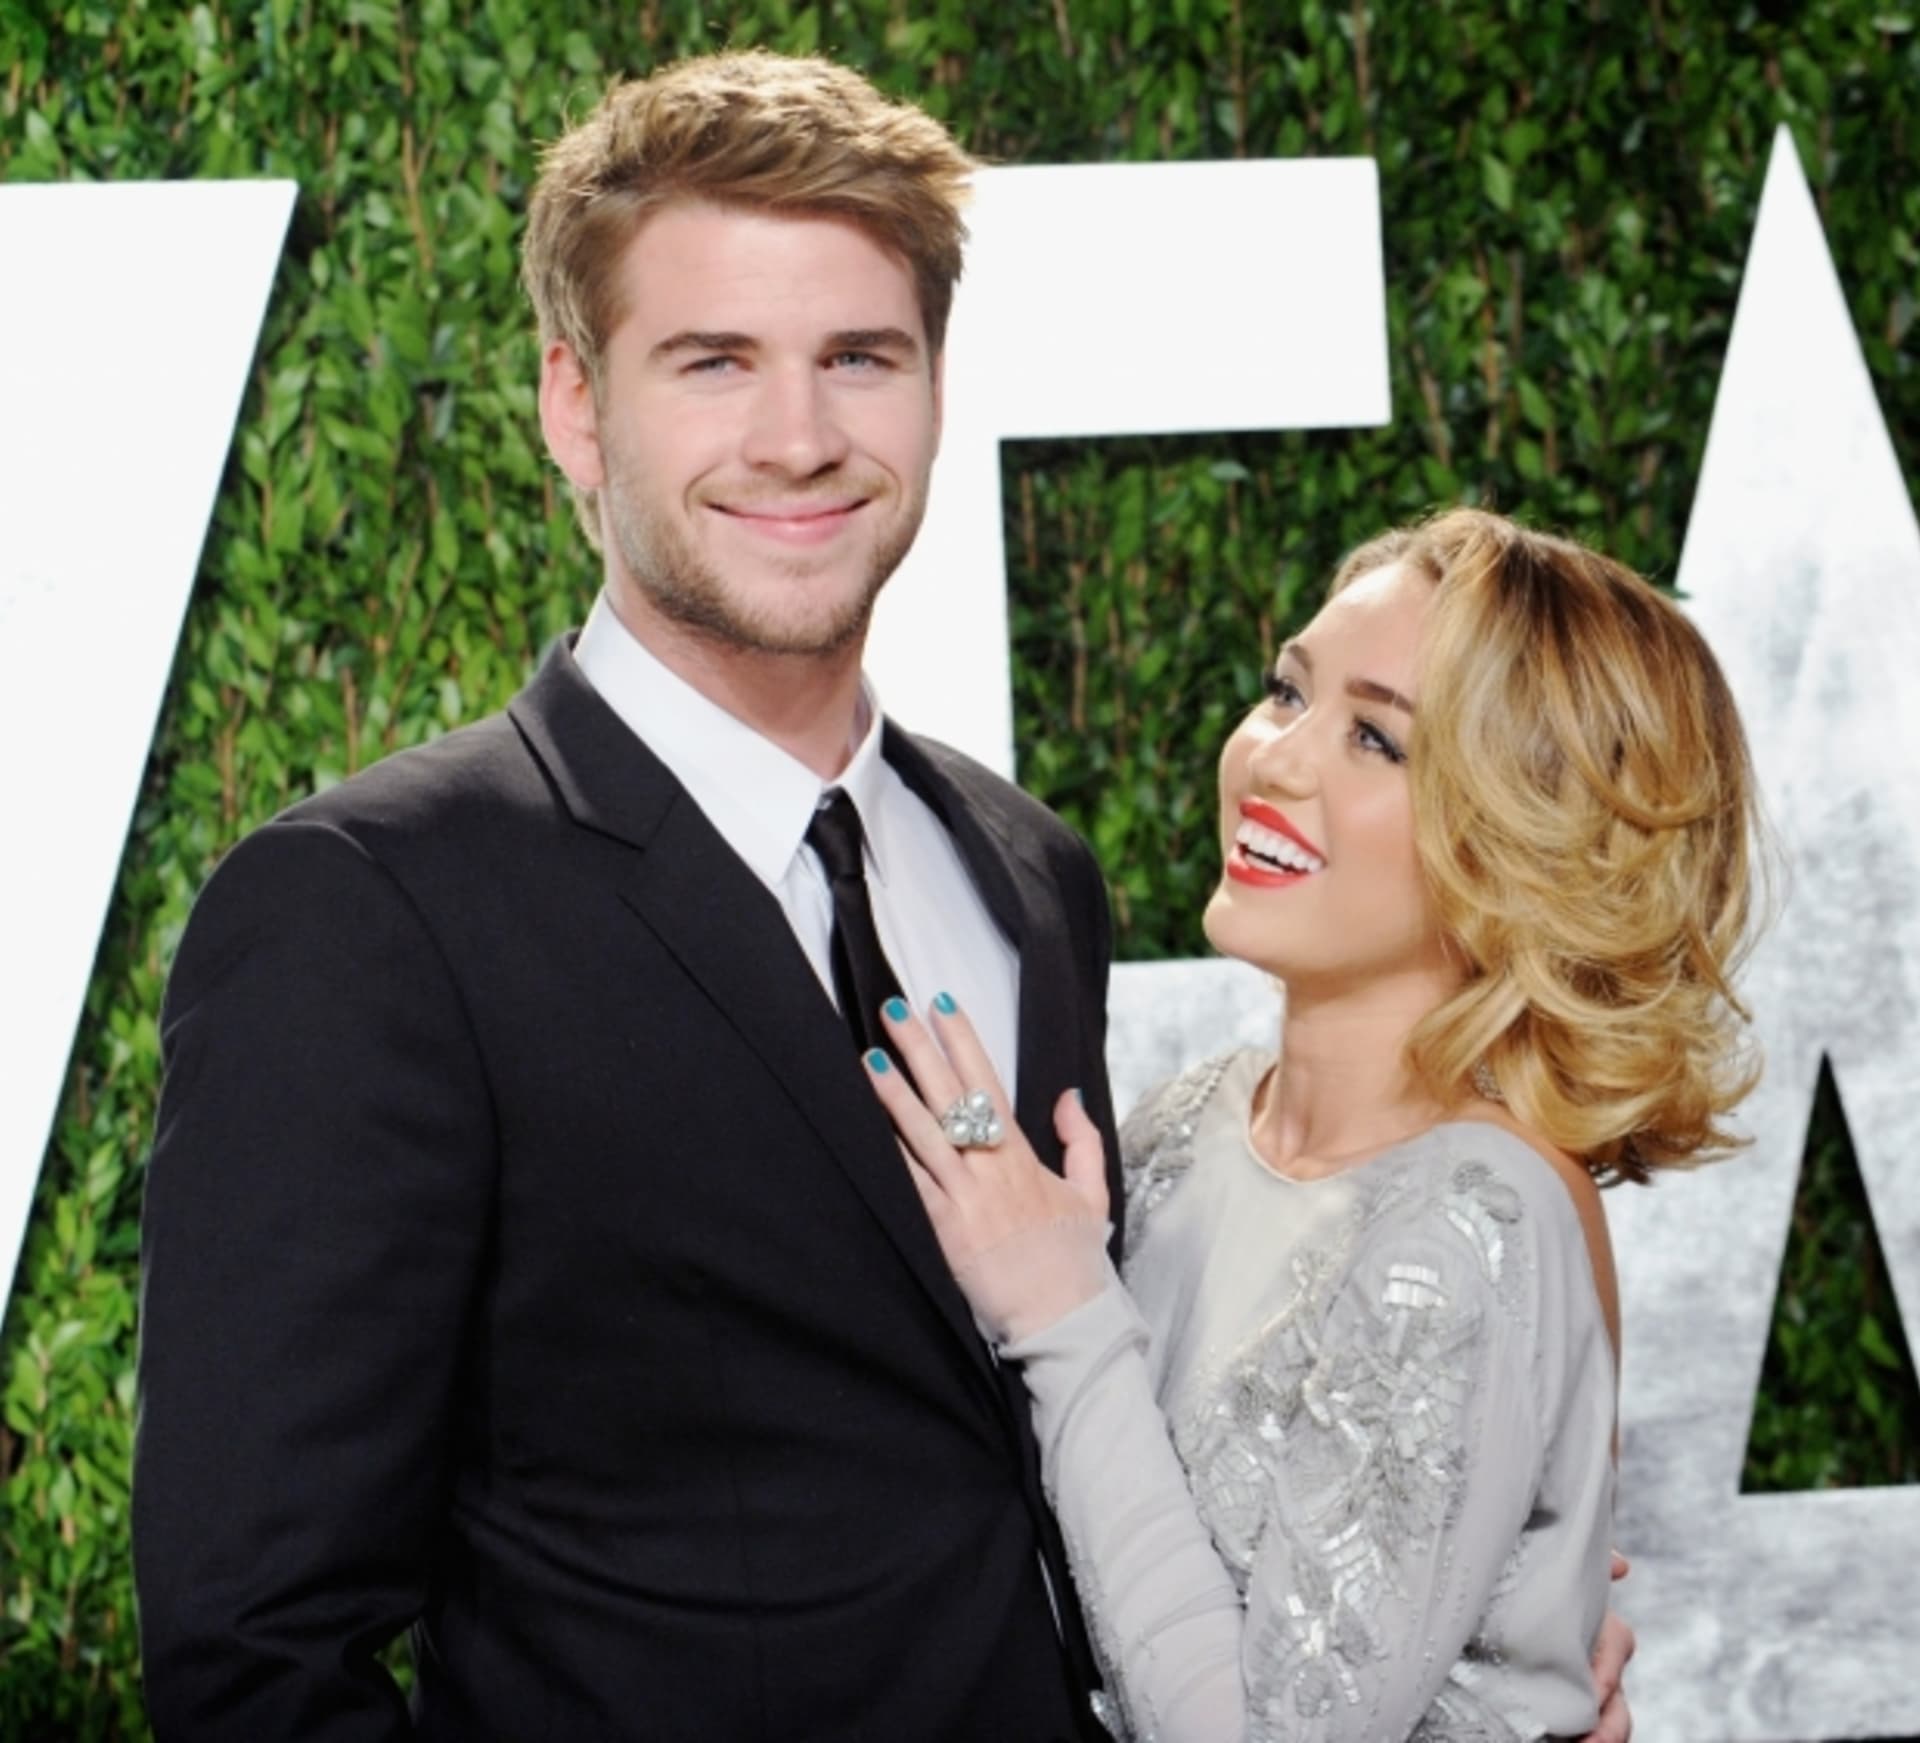 Tenhle pár už je minulostí. Zpěvačka Miley Cyrus s Liamem Hemsworthem se rozešli. Žádné zásnuby nebudou